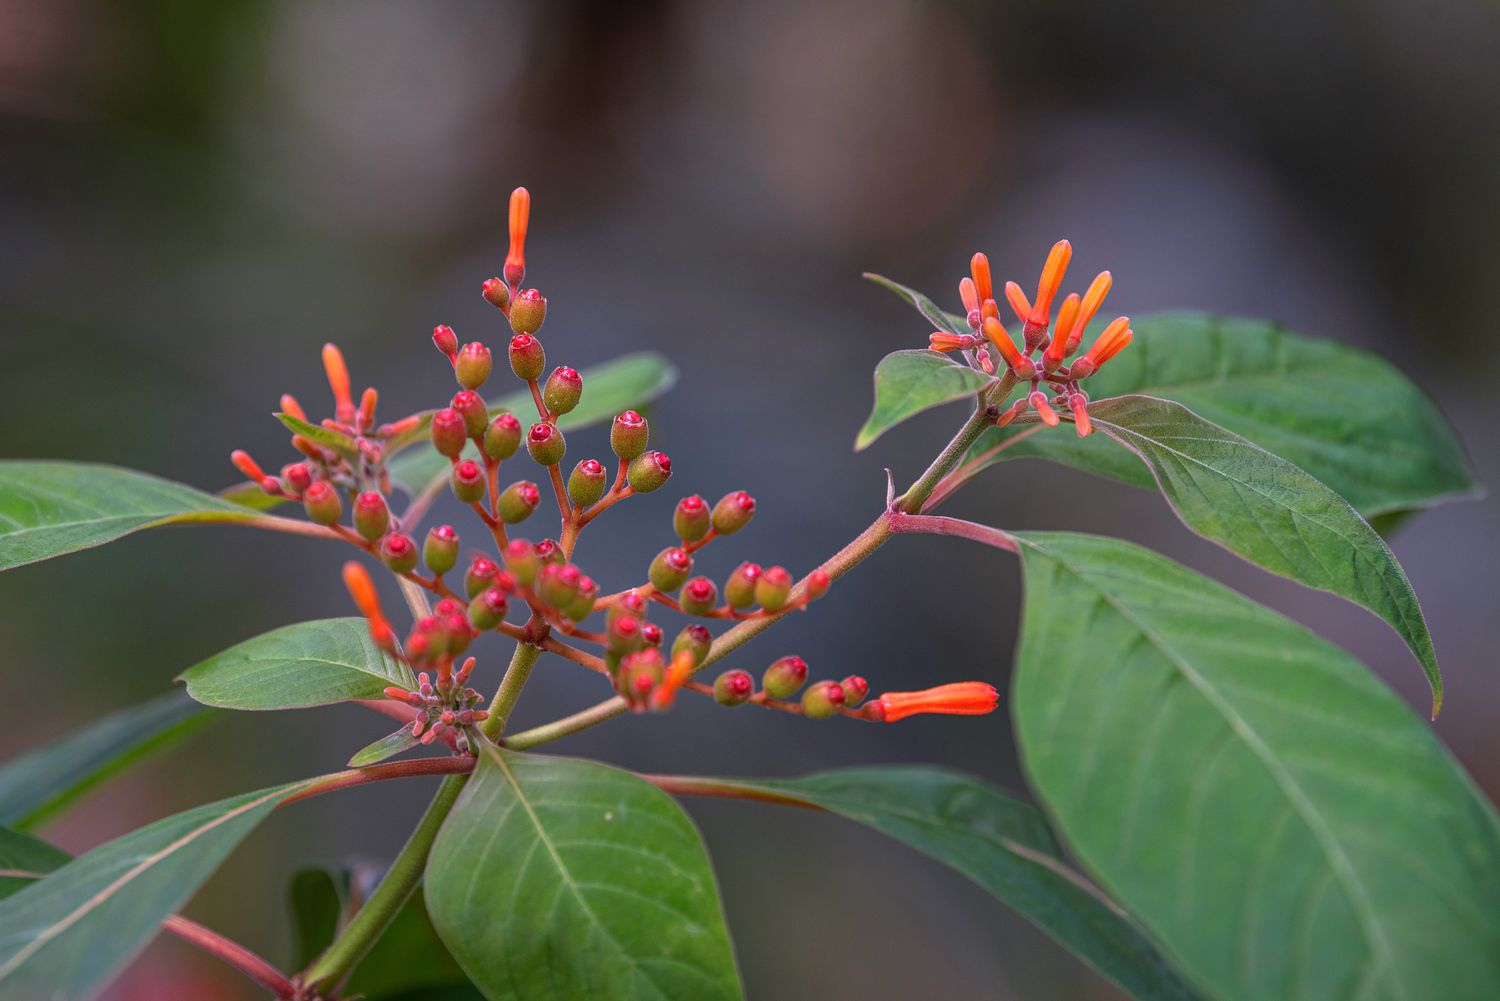 Zweig des Feuerbuschstrauchs mit orange-roten Knospen und röhrenförmigen Blüten in Nahaufnahme